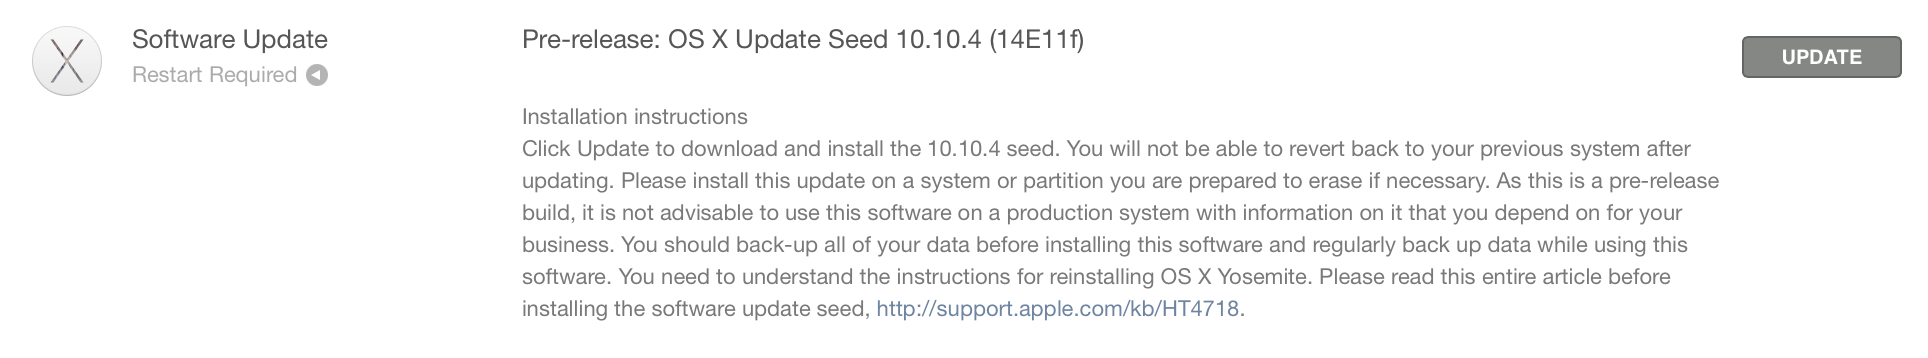 OS X 10.10.4 beta build